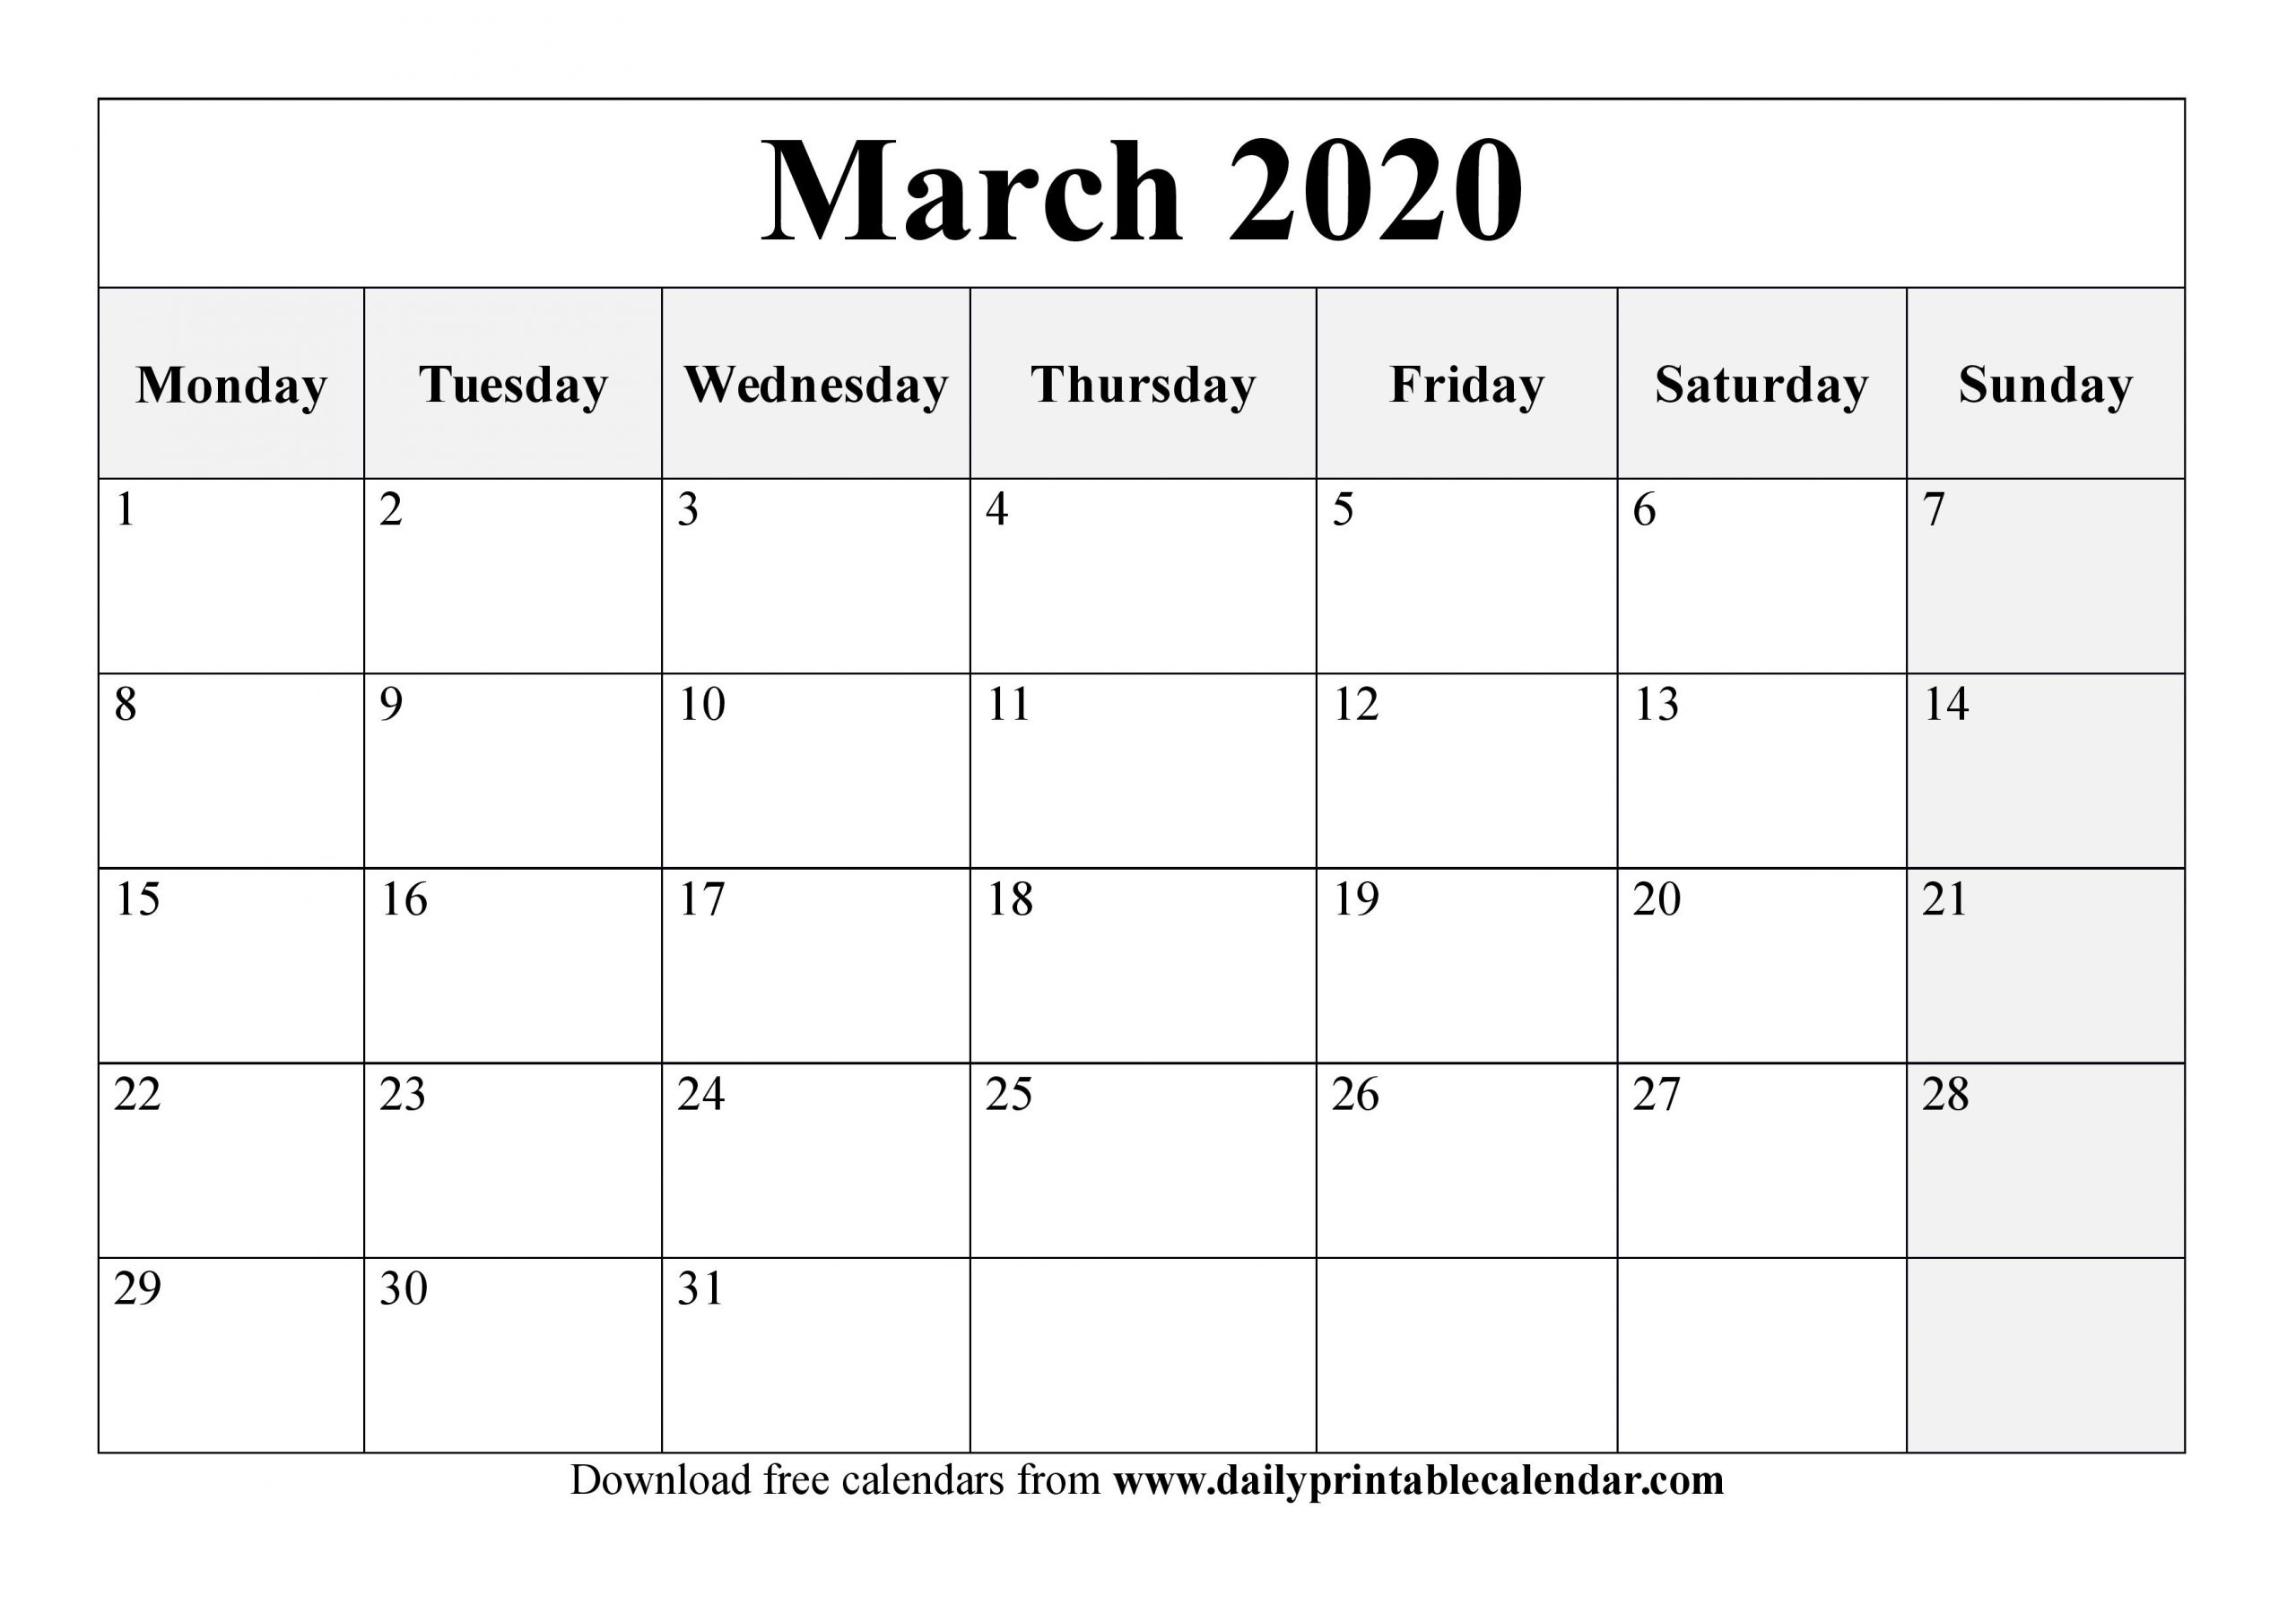 March 2020 Calendar Printable - Blank Templates - 2020 Calendar